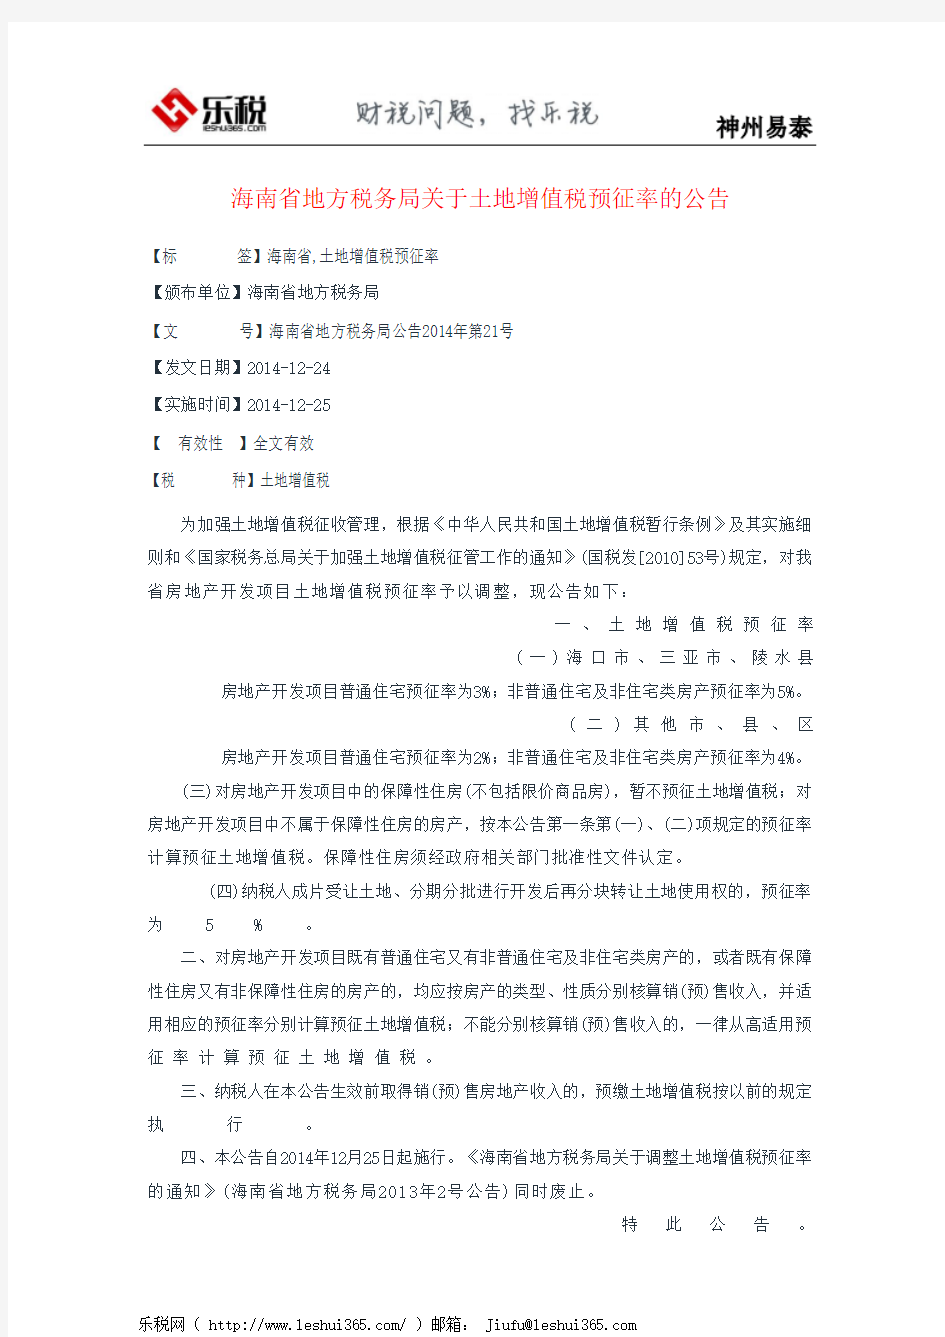 海南省地方税务局关于土地增值税预征率的公告